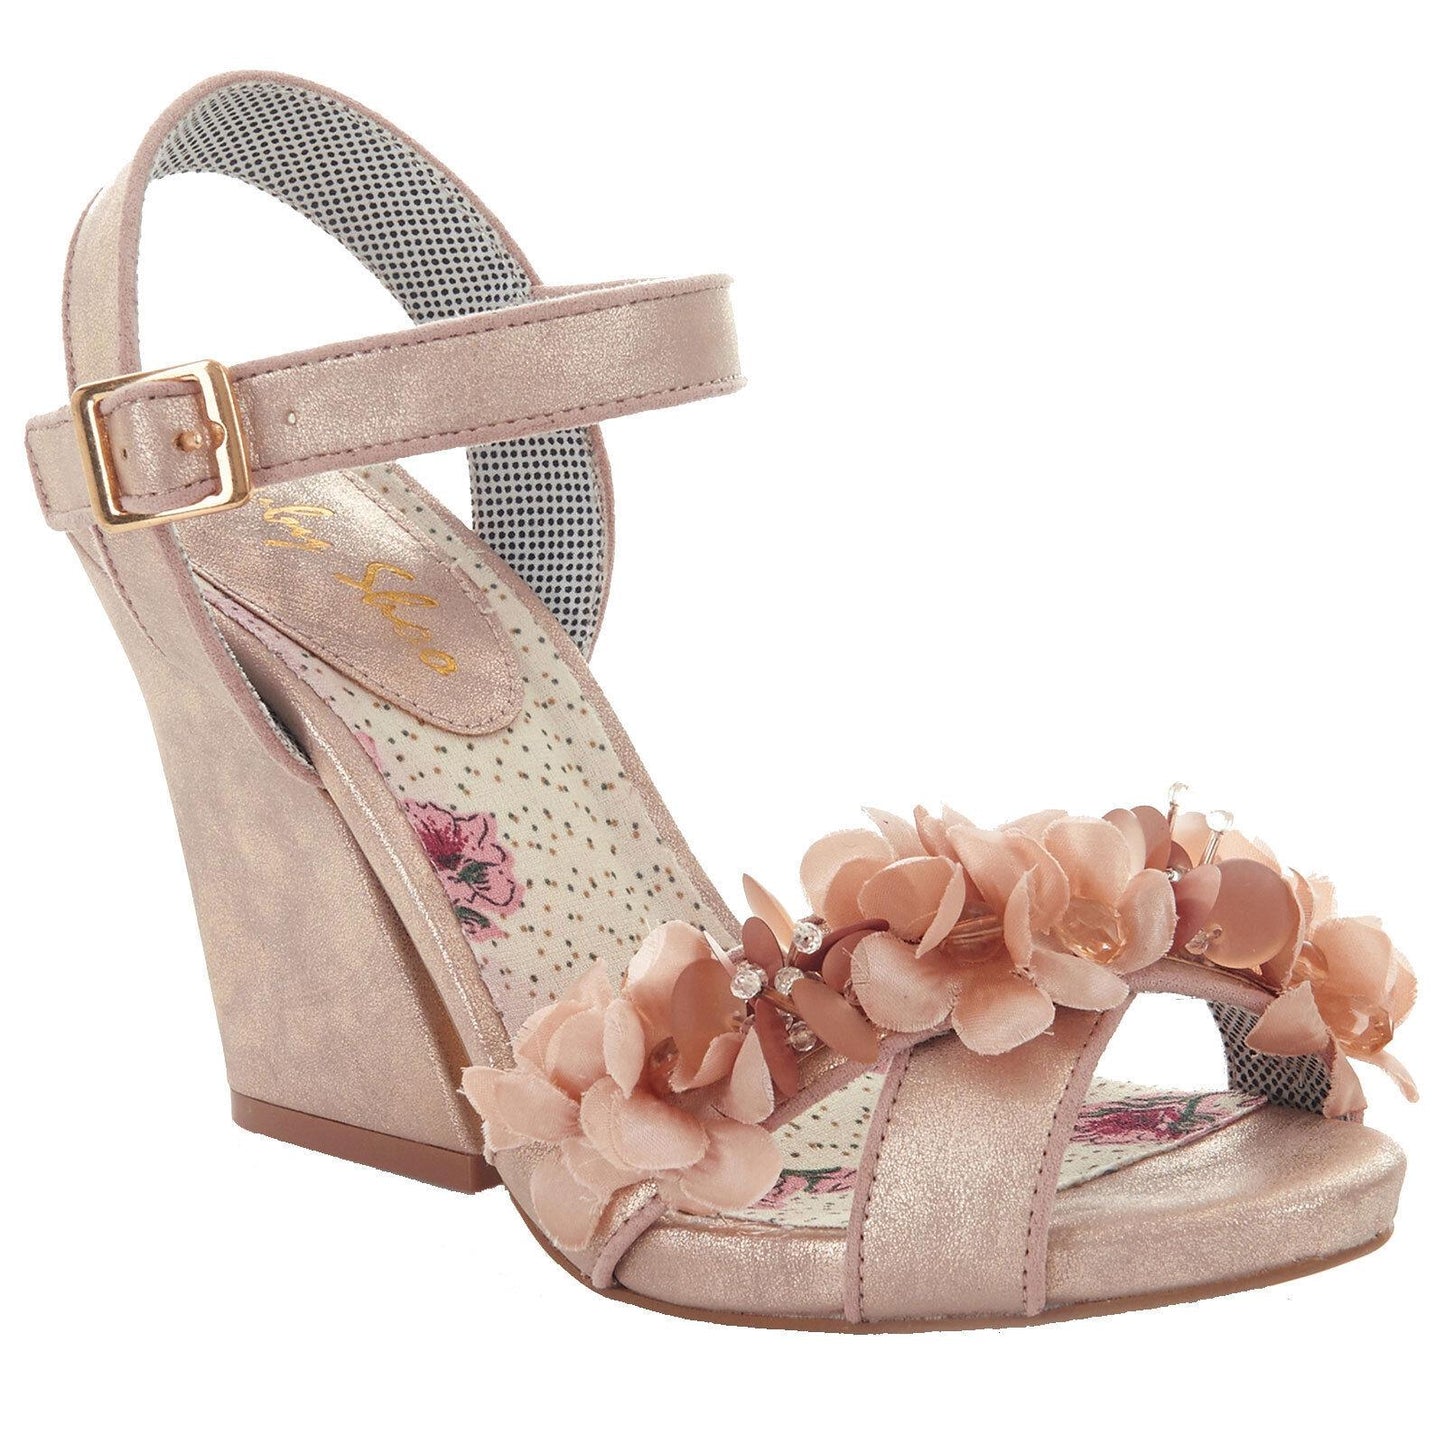 Ladies Ruby Shoo Ellen Champagne Floral Vegan Friendly Sandals Shoes